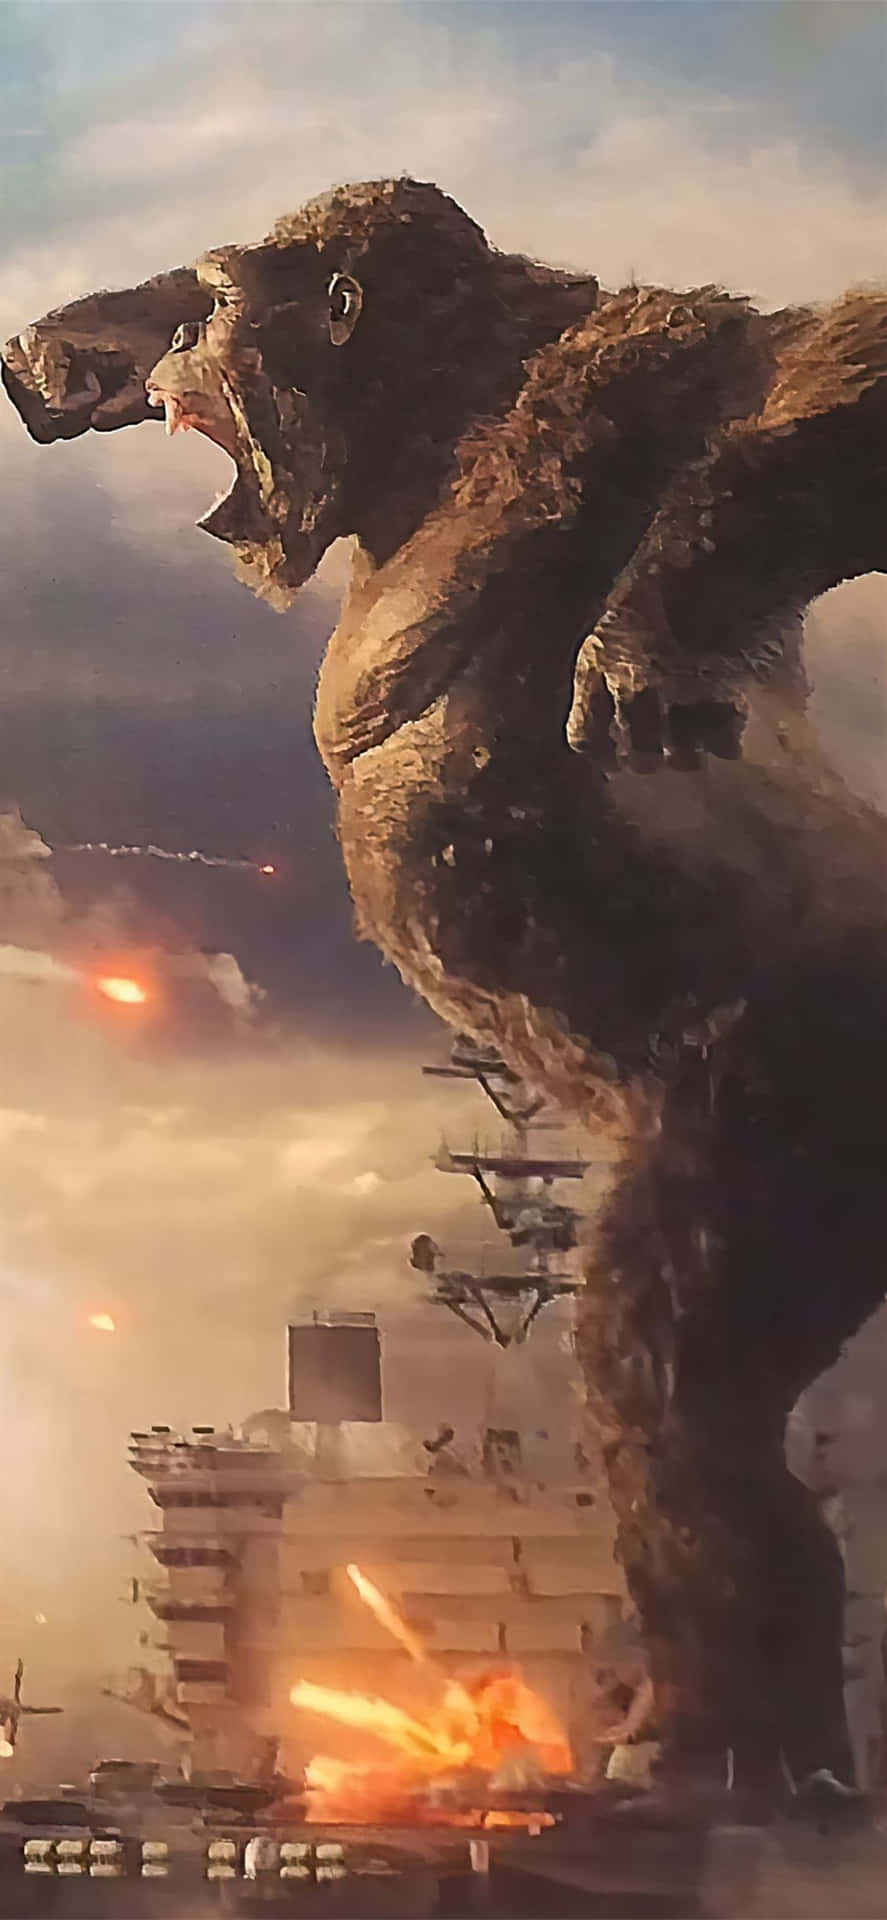 Epic Battle: Godzilla Vs Kong